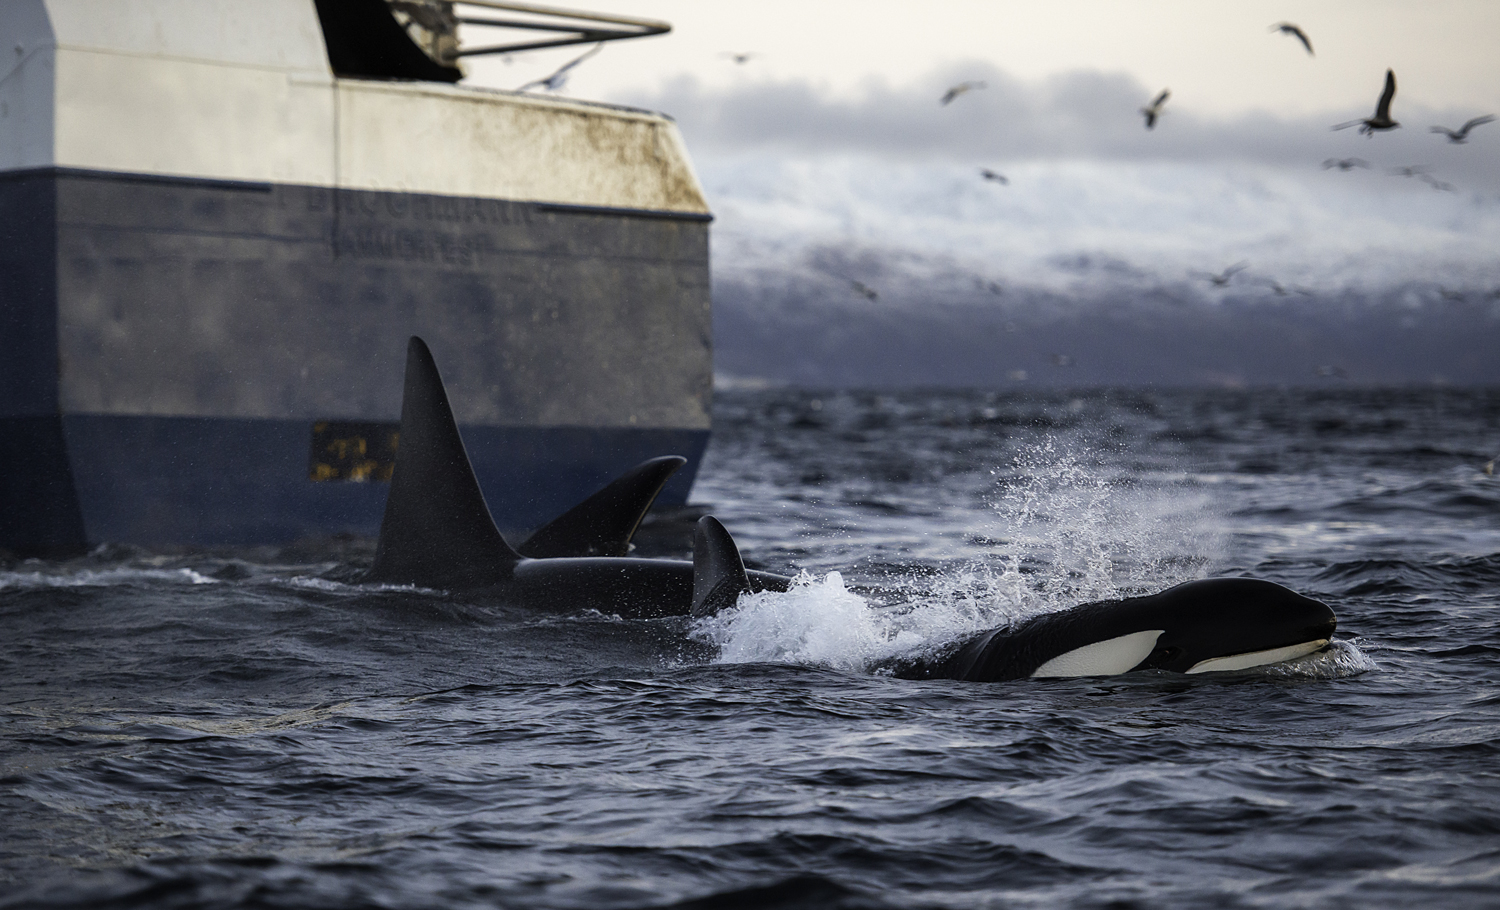 Orcas swim near a large vessel.